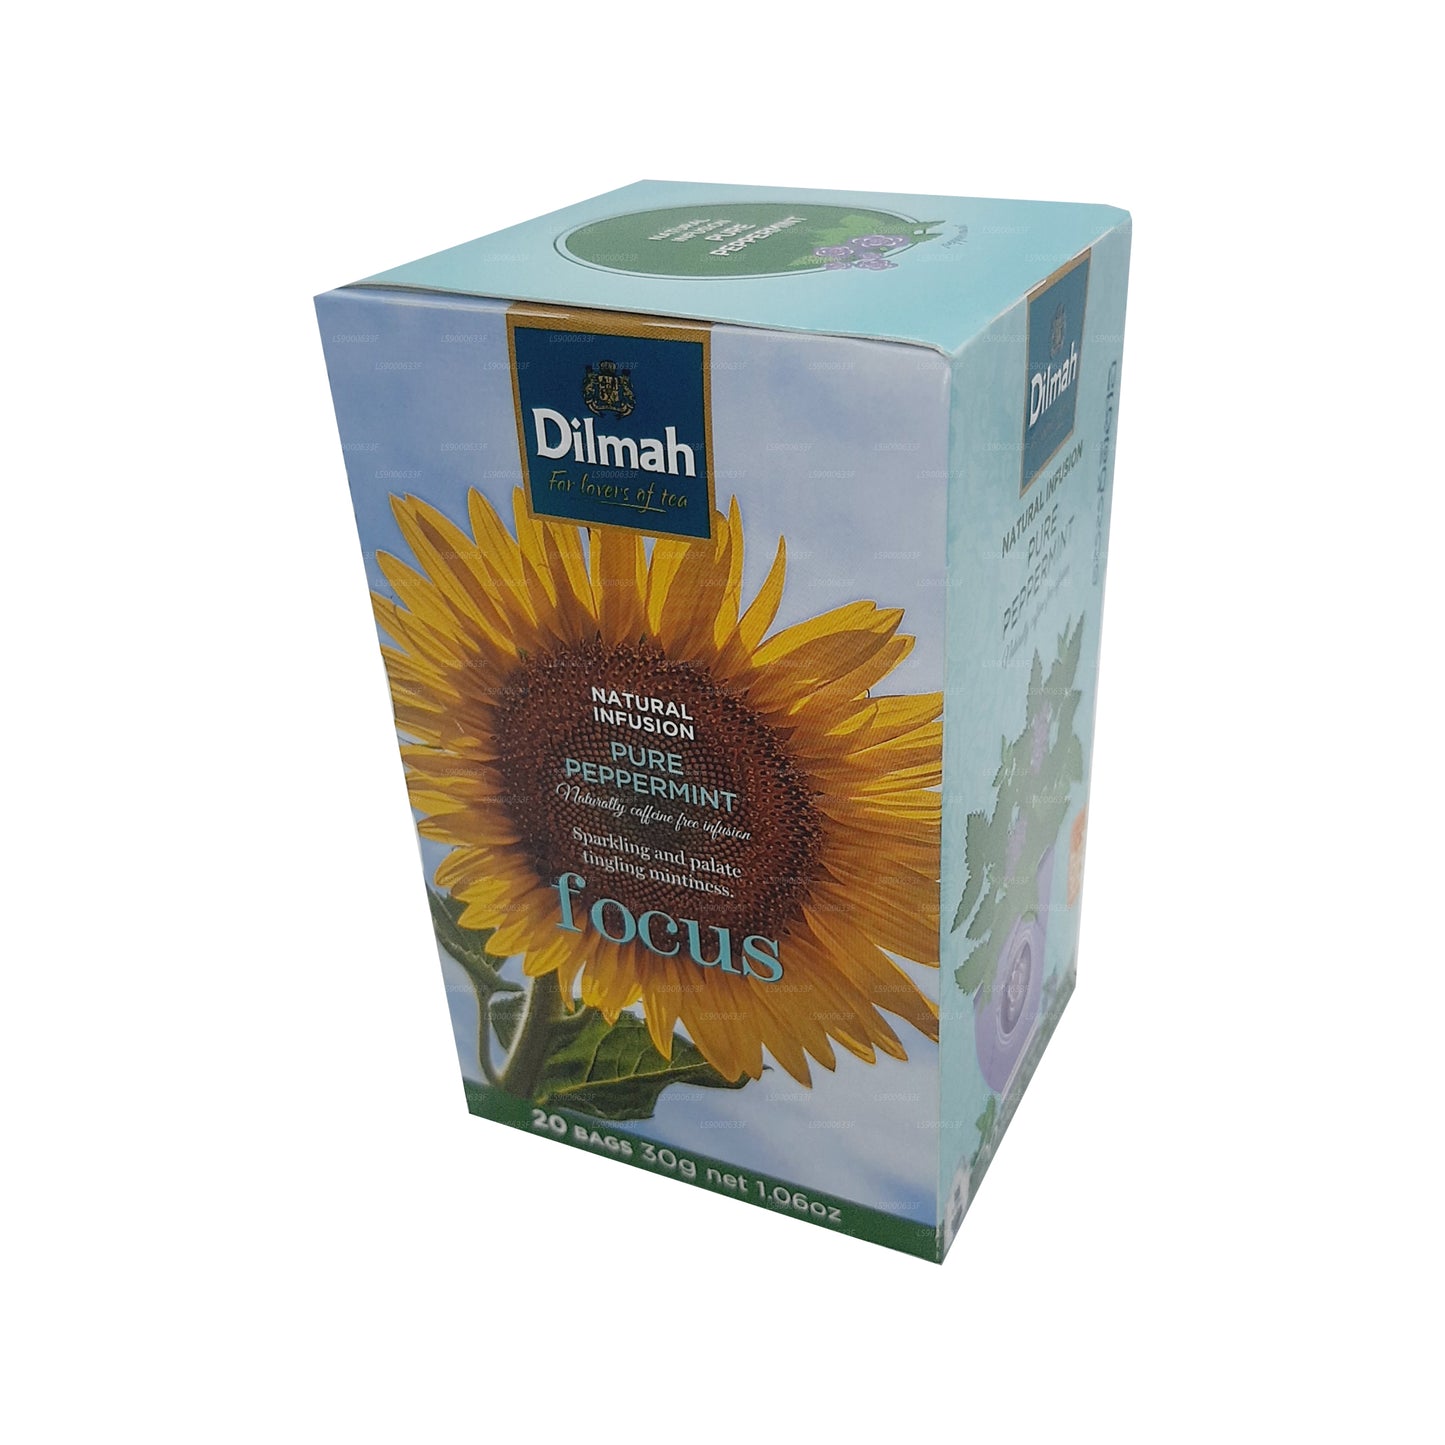 Dilmah Natural Infusion à la menthe poivrée pure (30 g) 20 sachets de thé